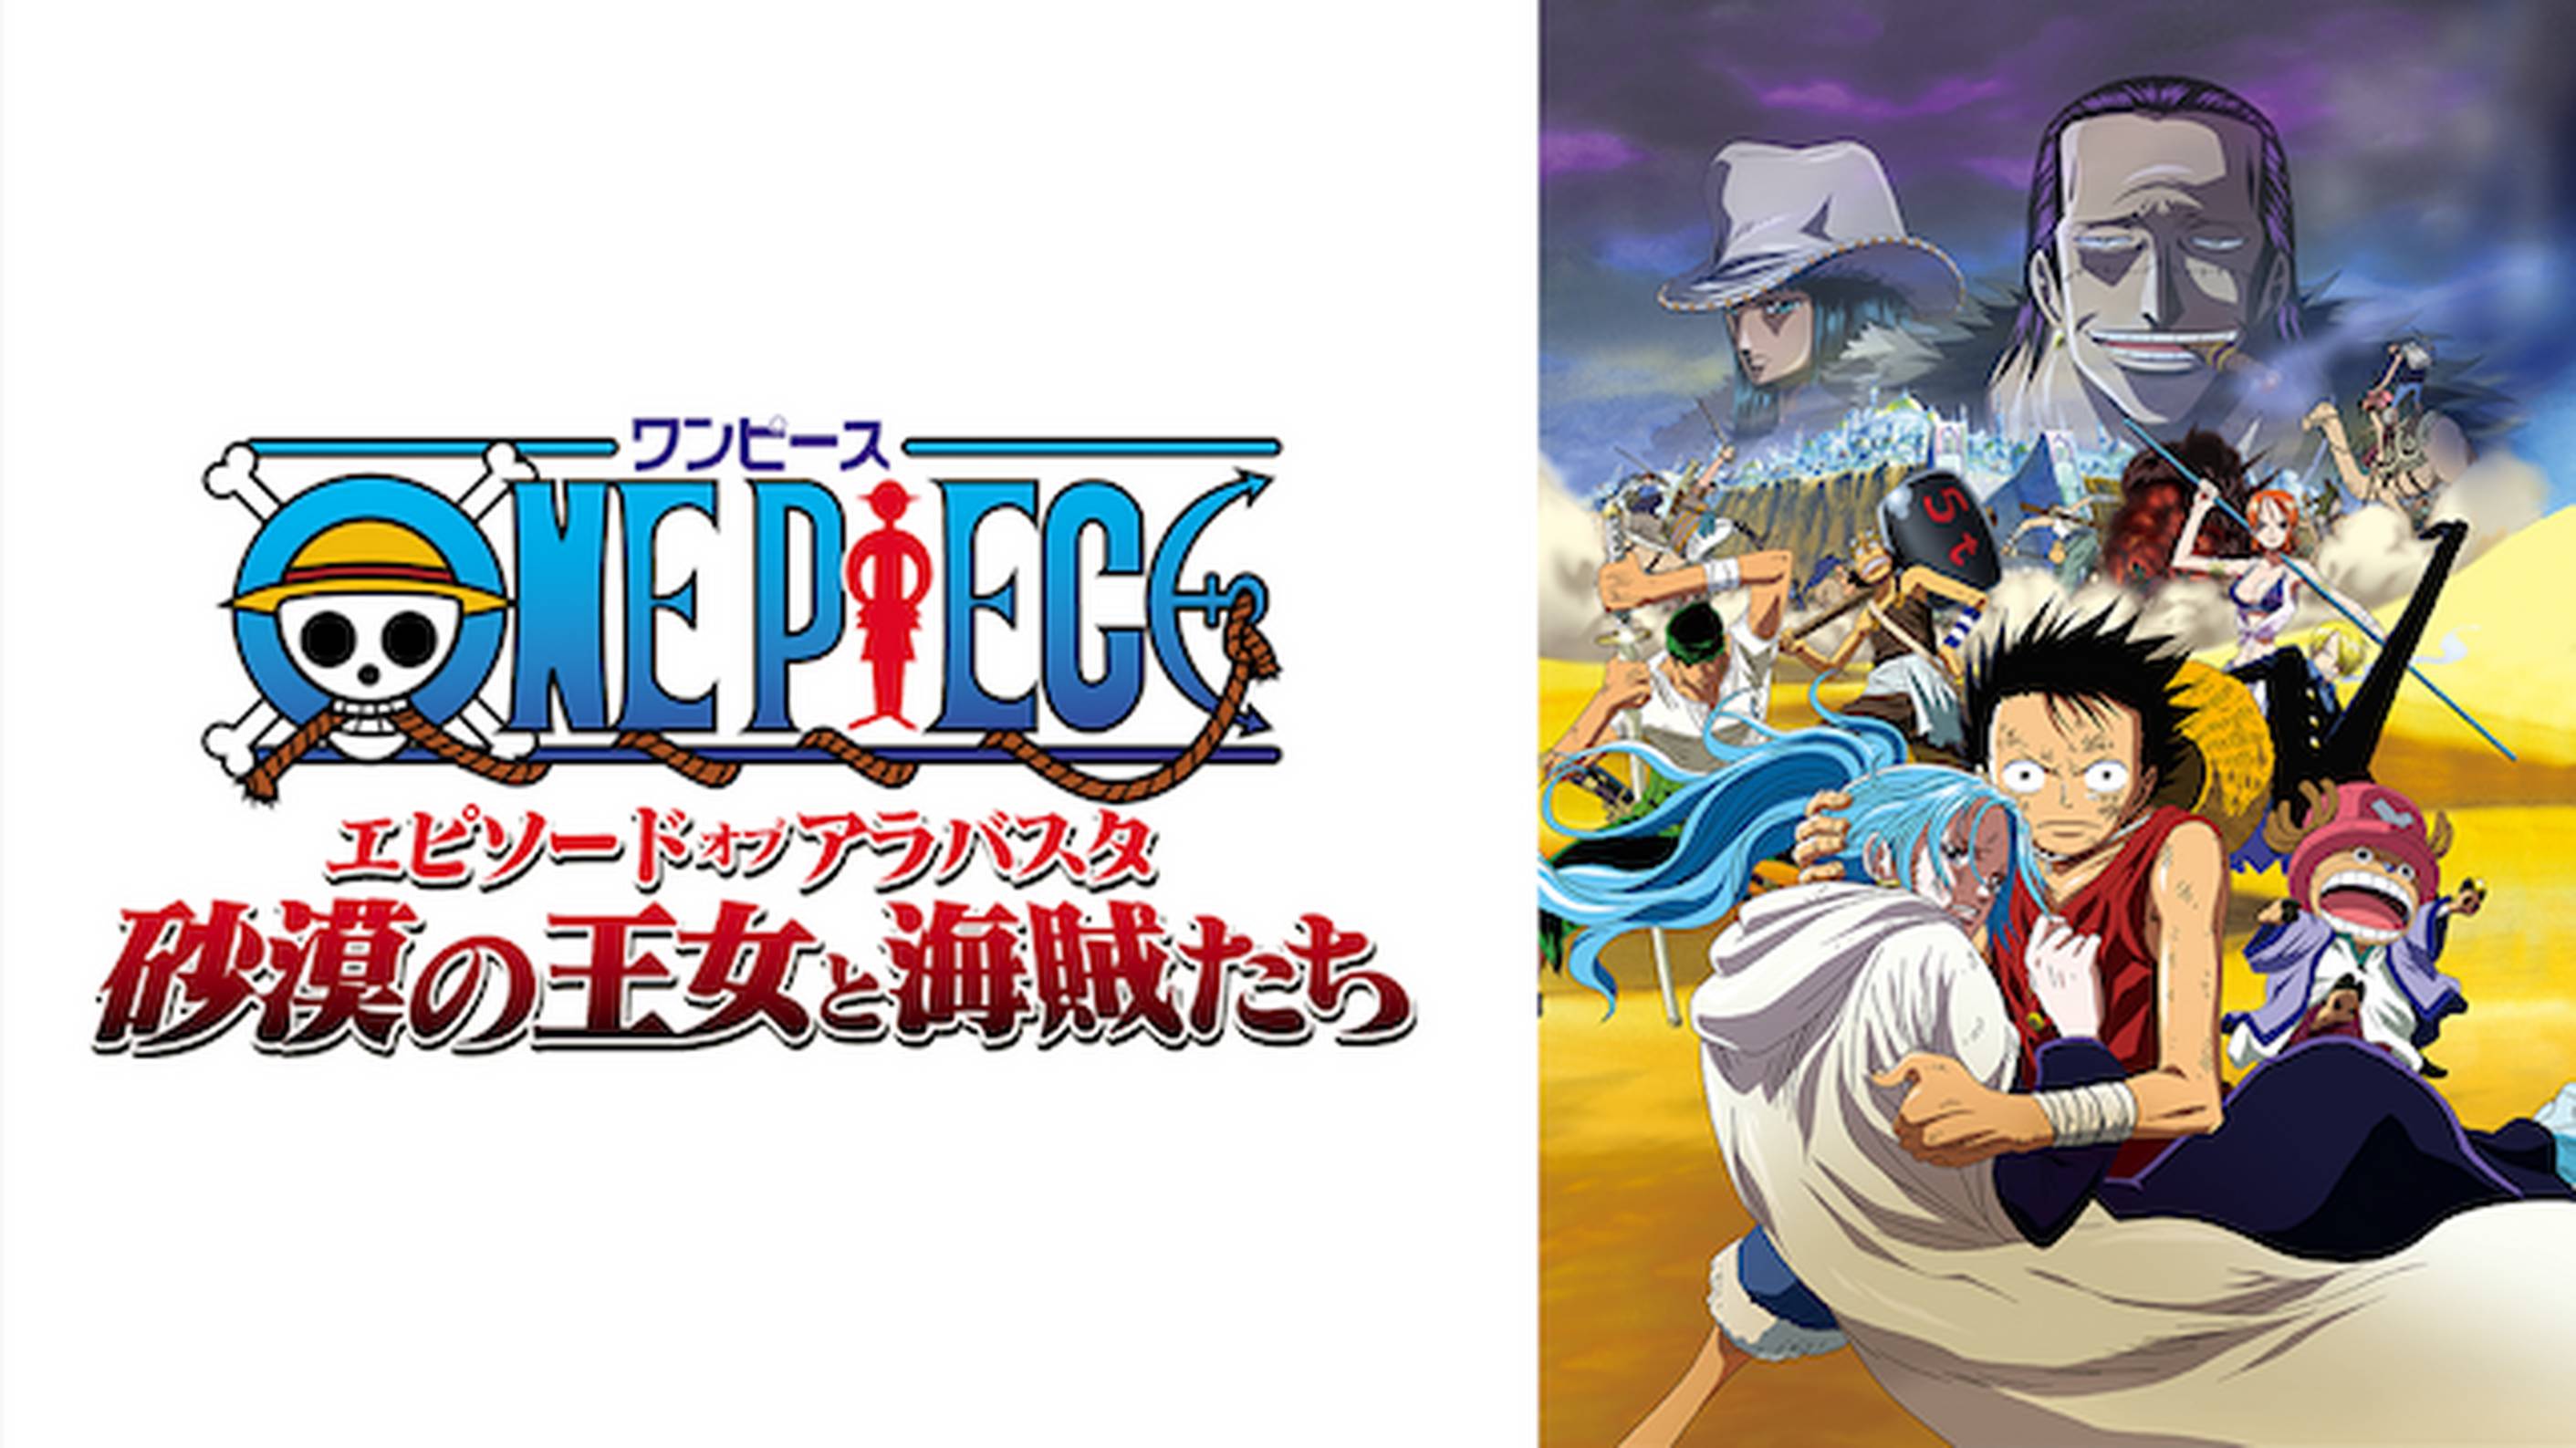 劇場版 One Piece シリーズ 動画配信 U Next 31日間無料トライアル